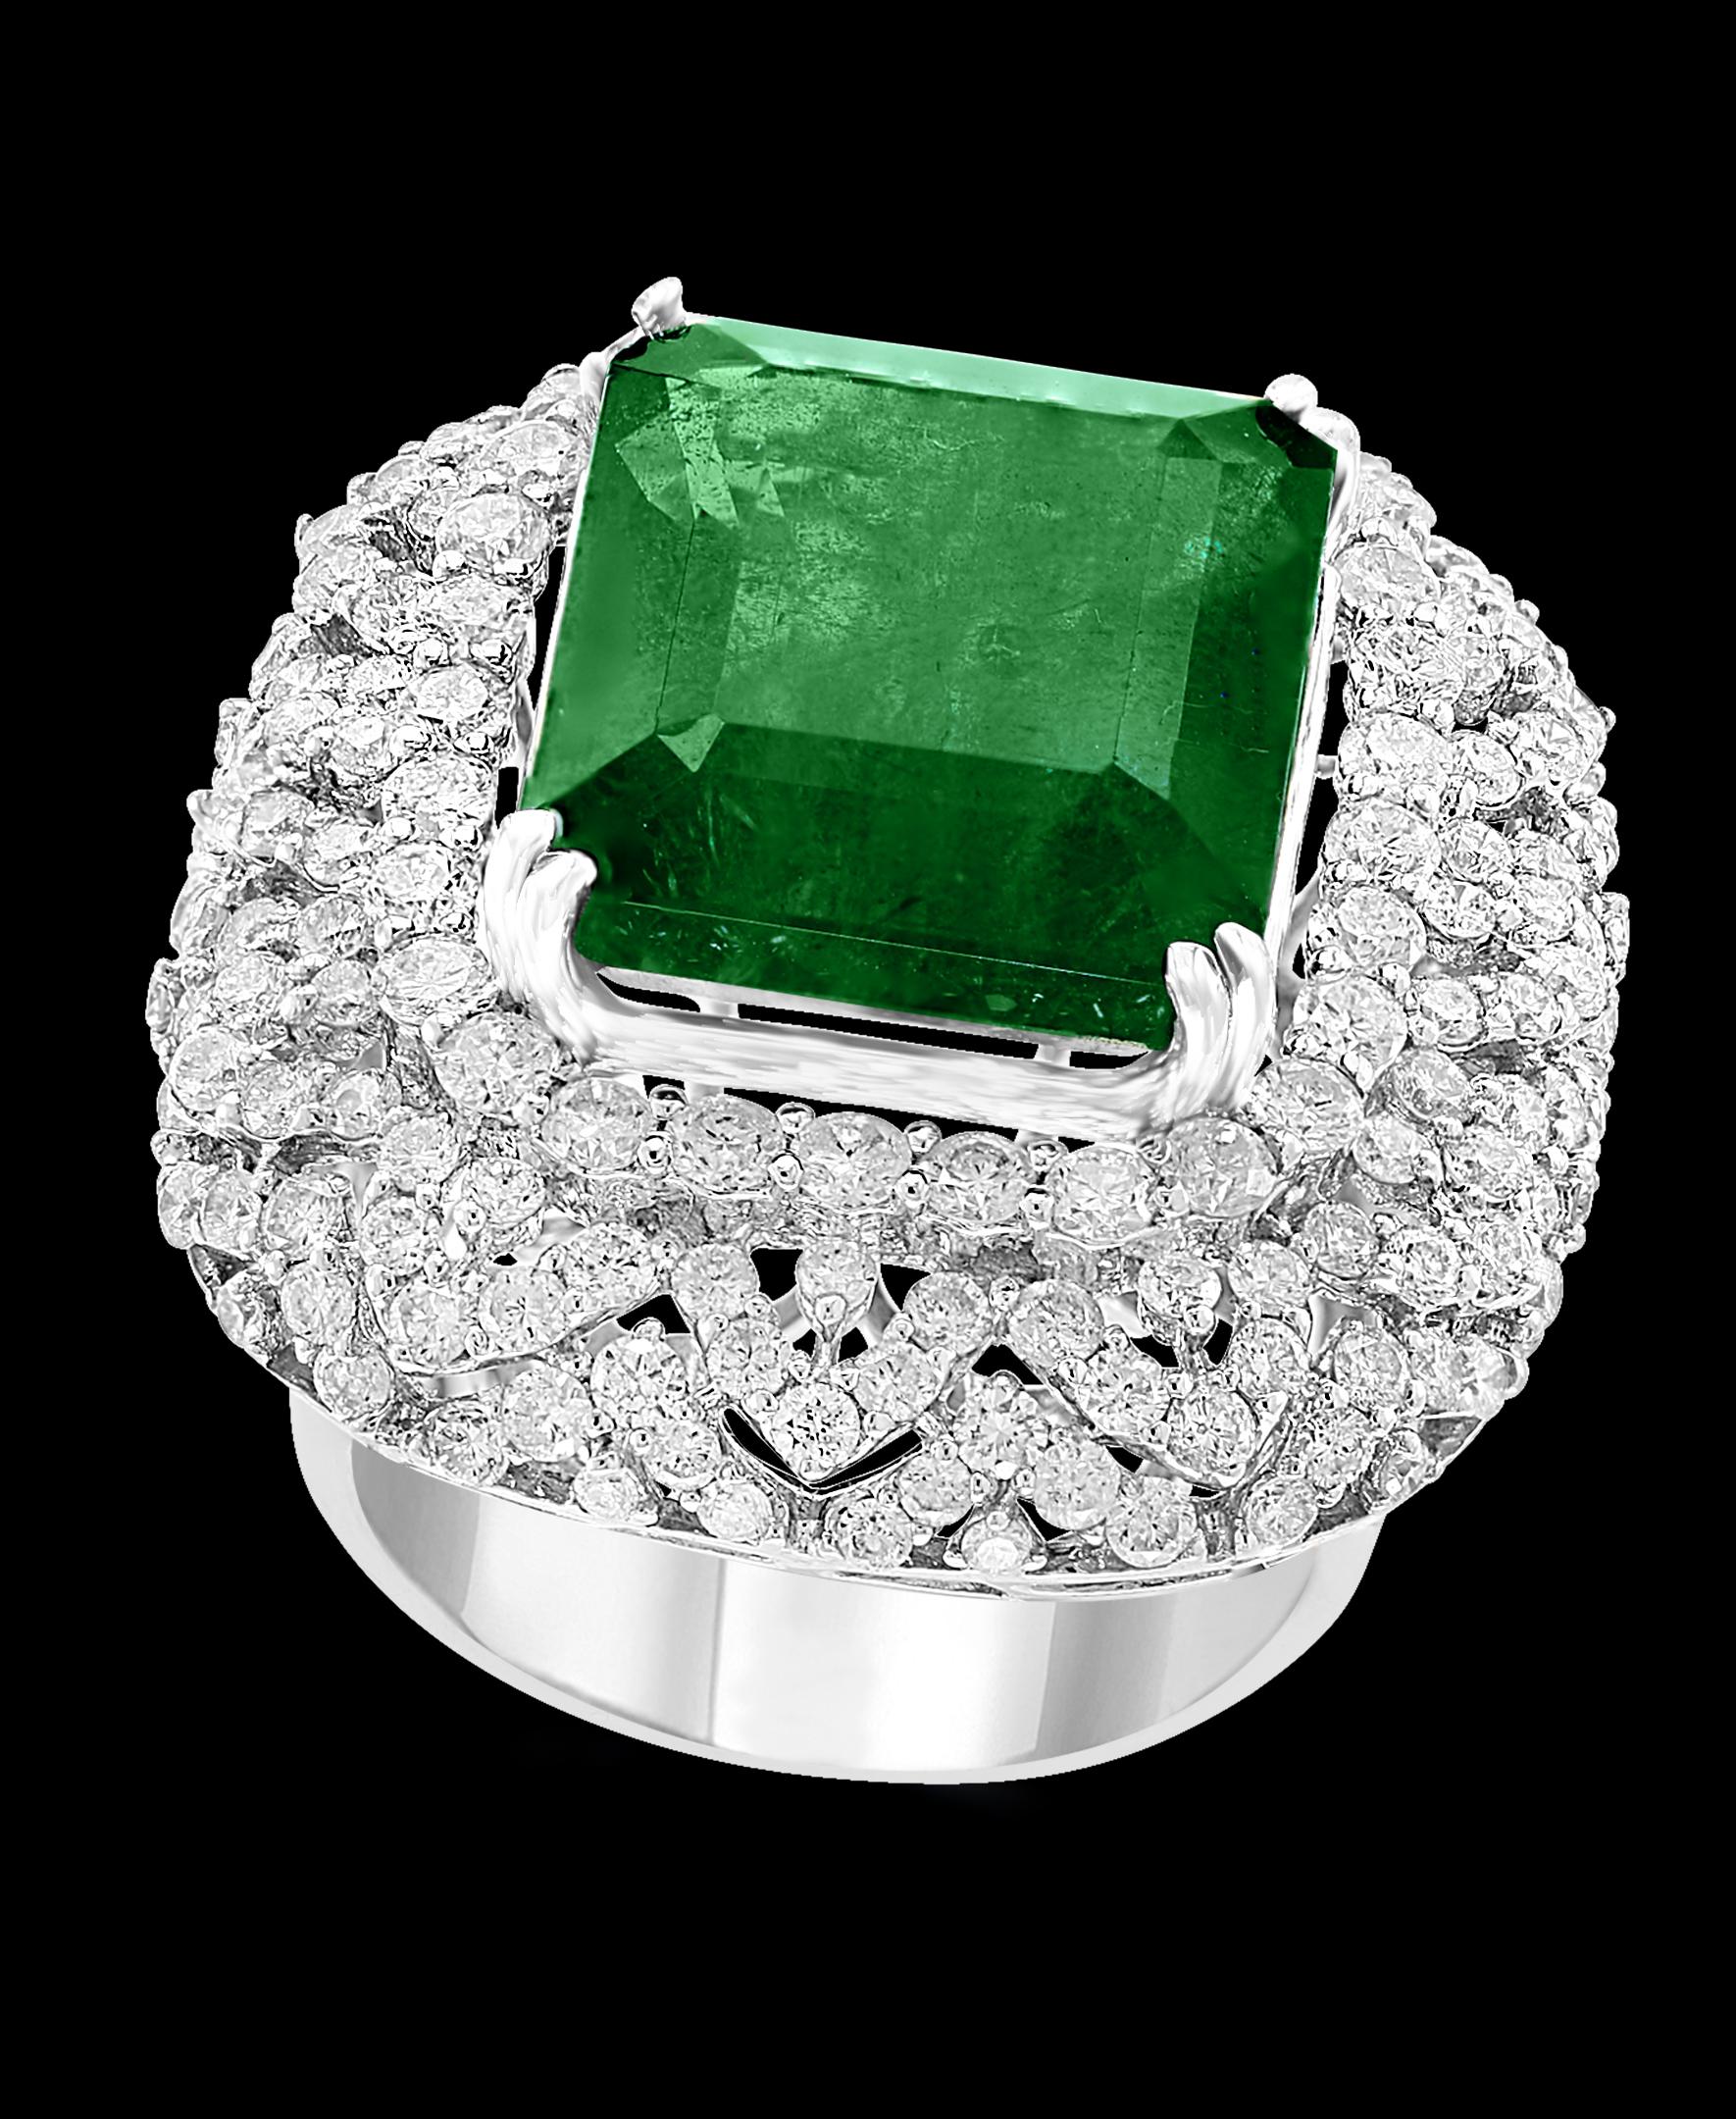 4.5 carat emerald